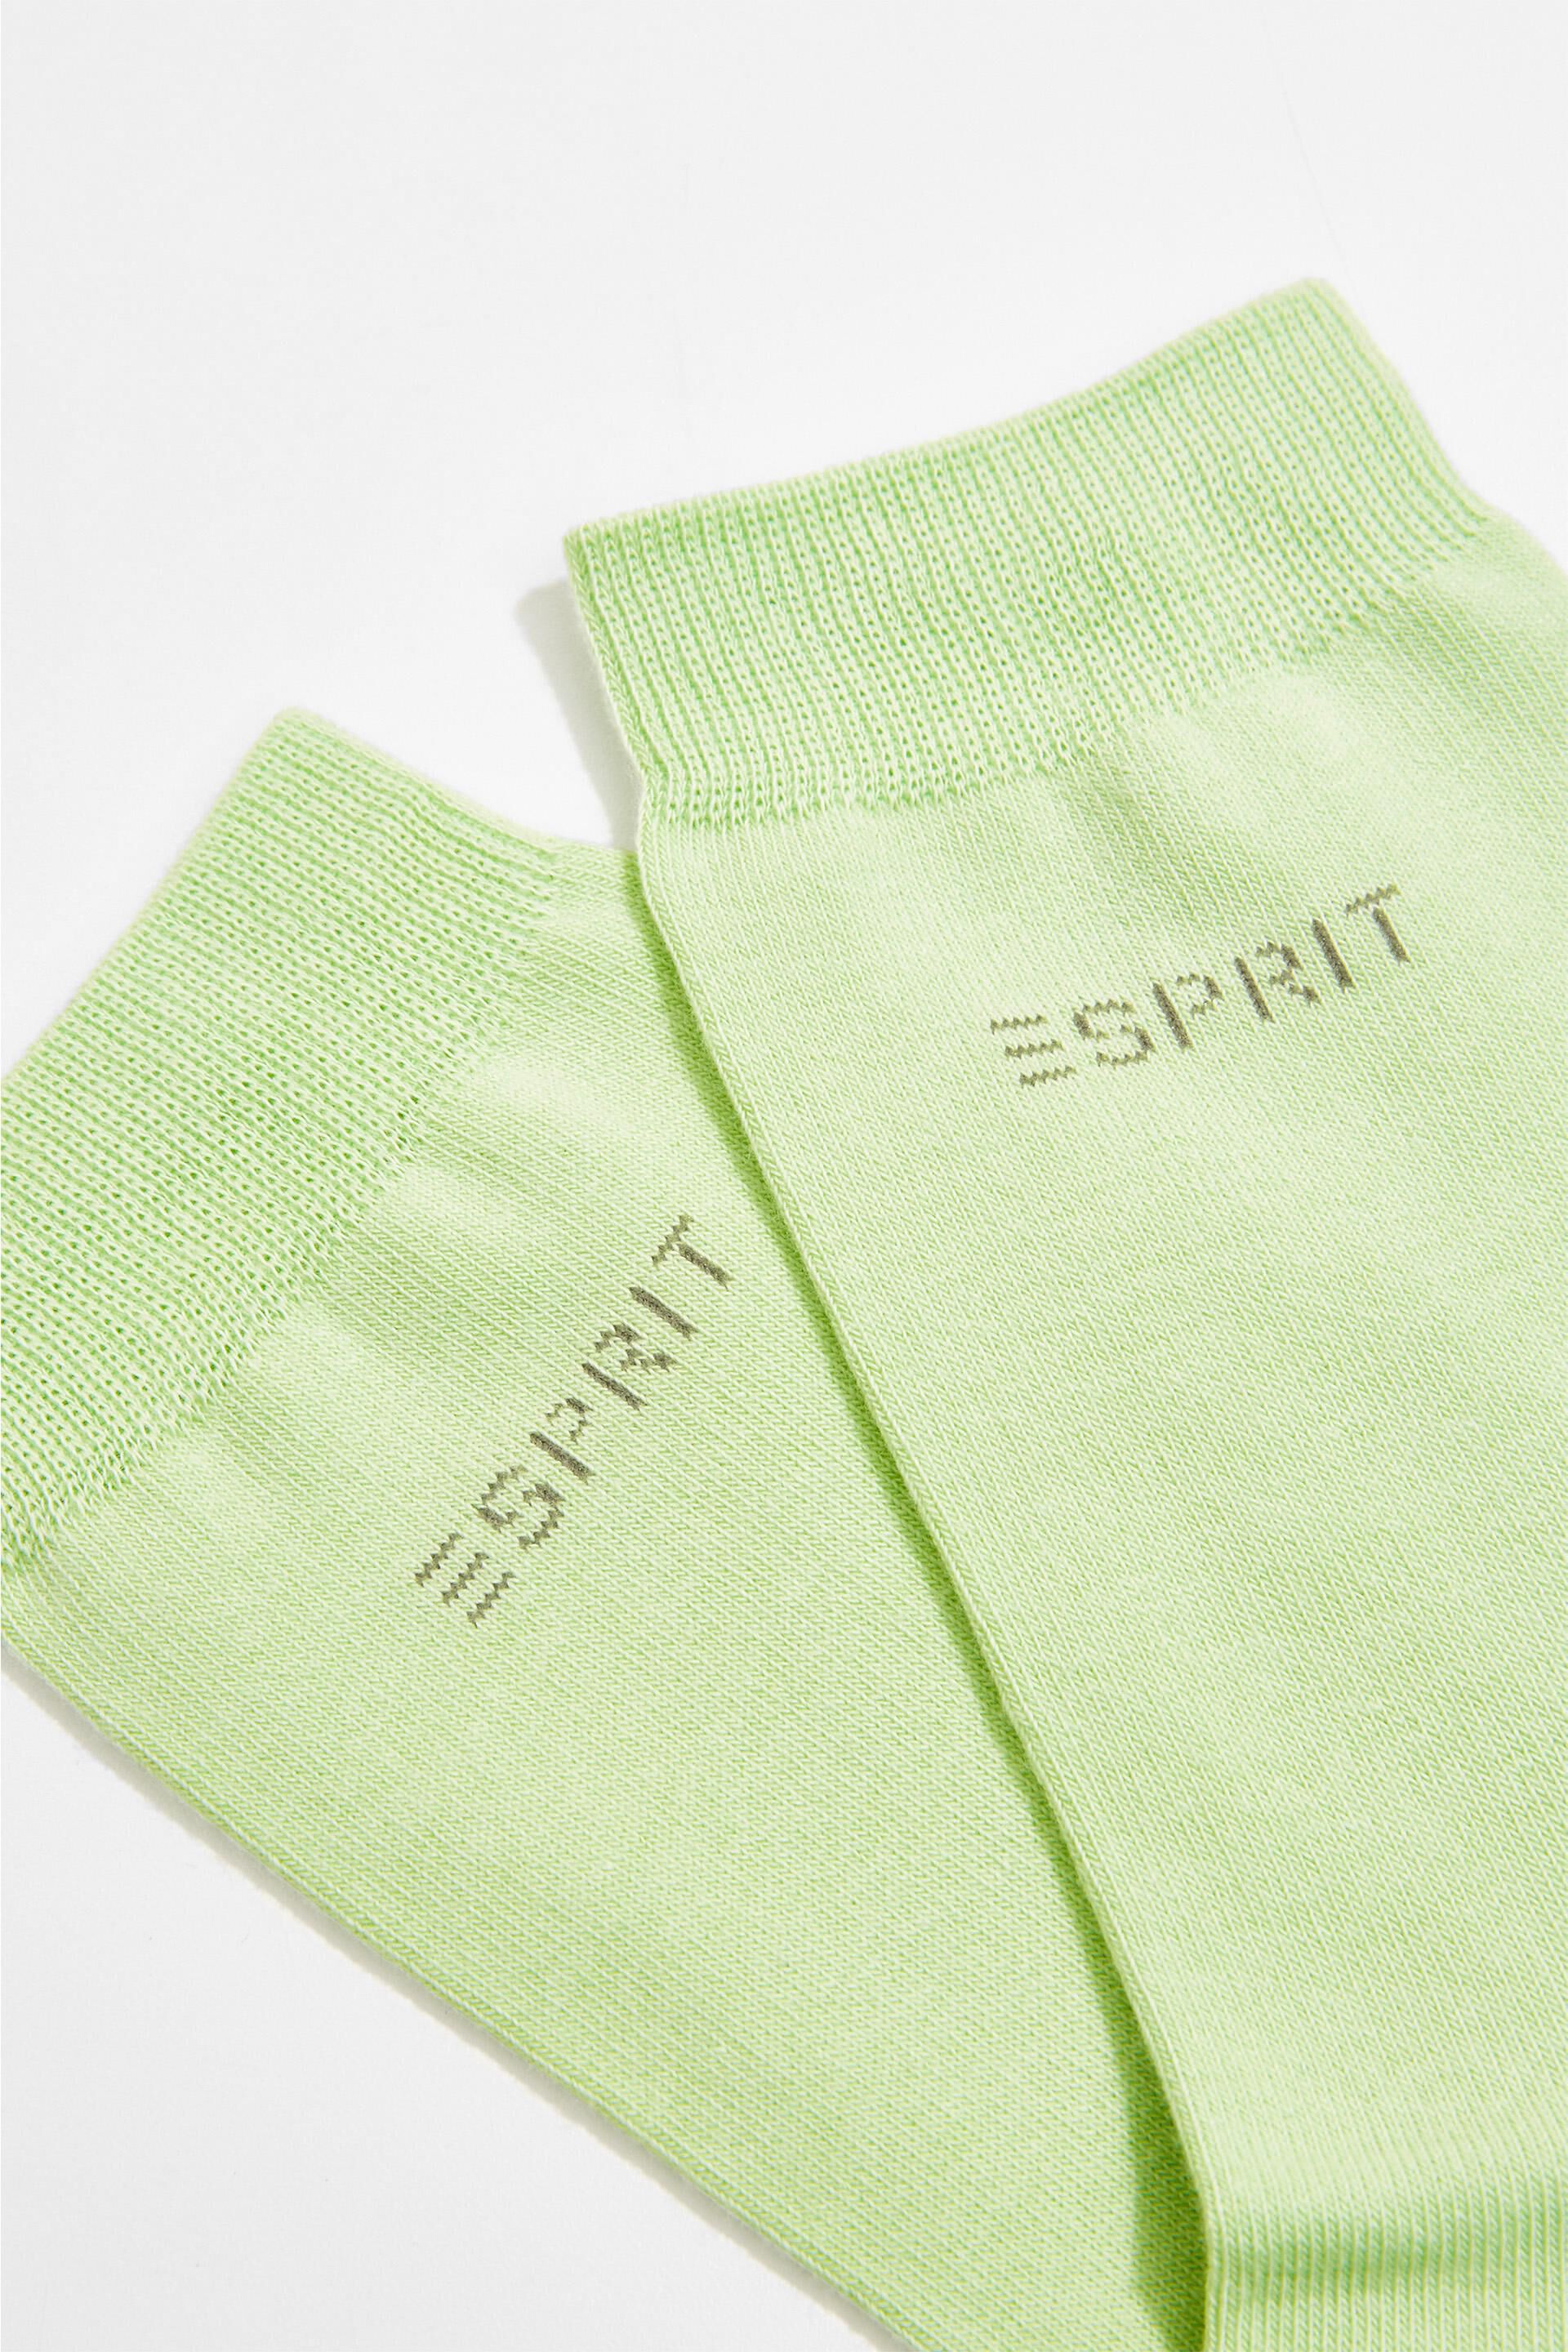 Esprit Online Store 2er-Pack Socken mit Bio-Baumwolle gestricktem Logo